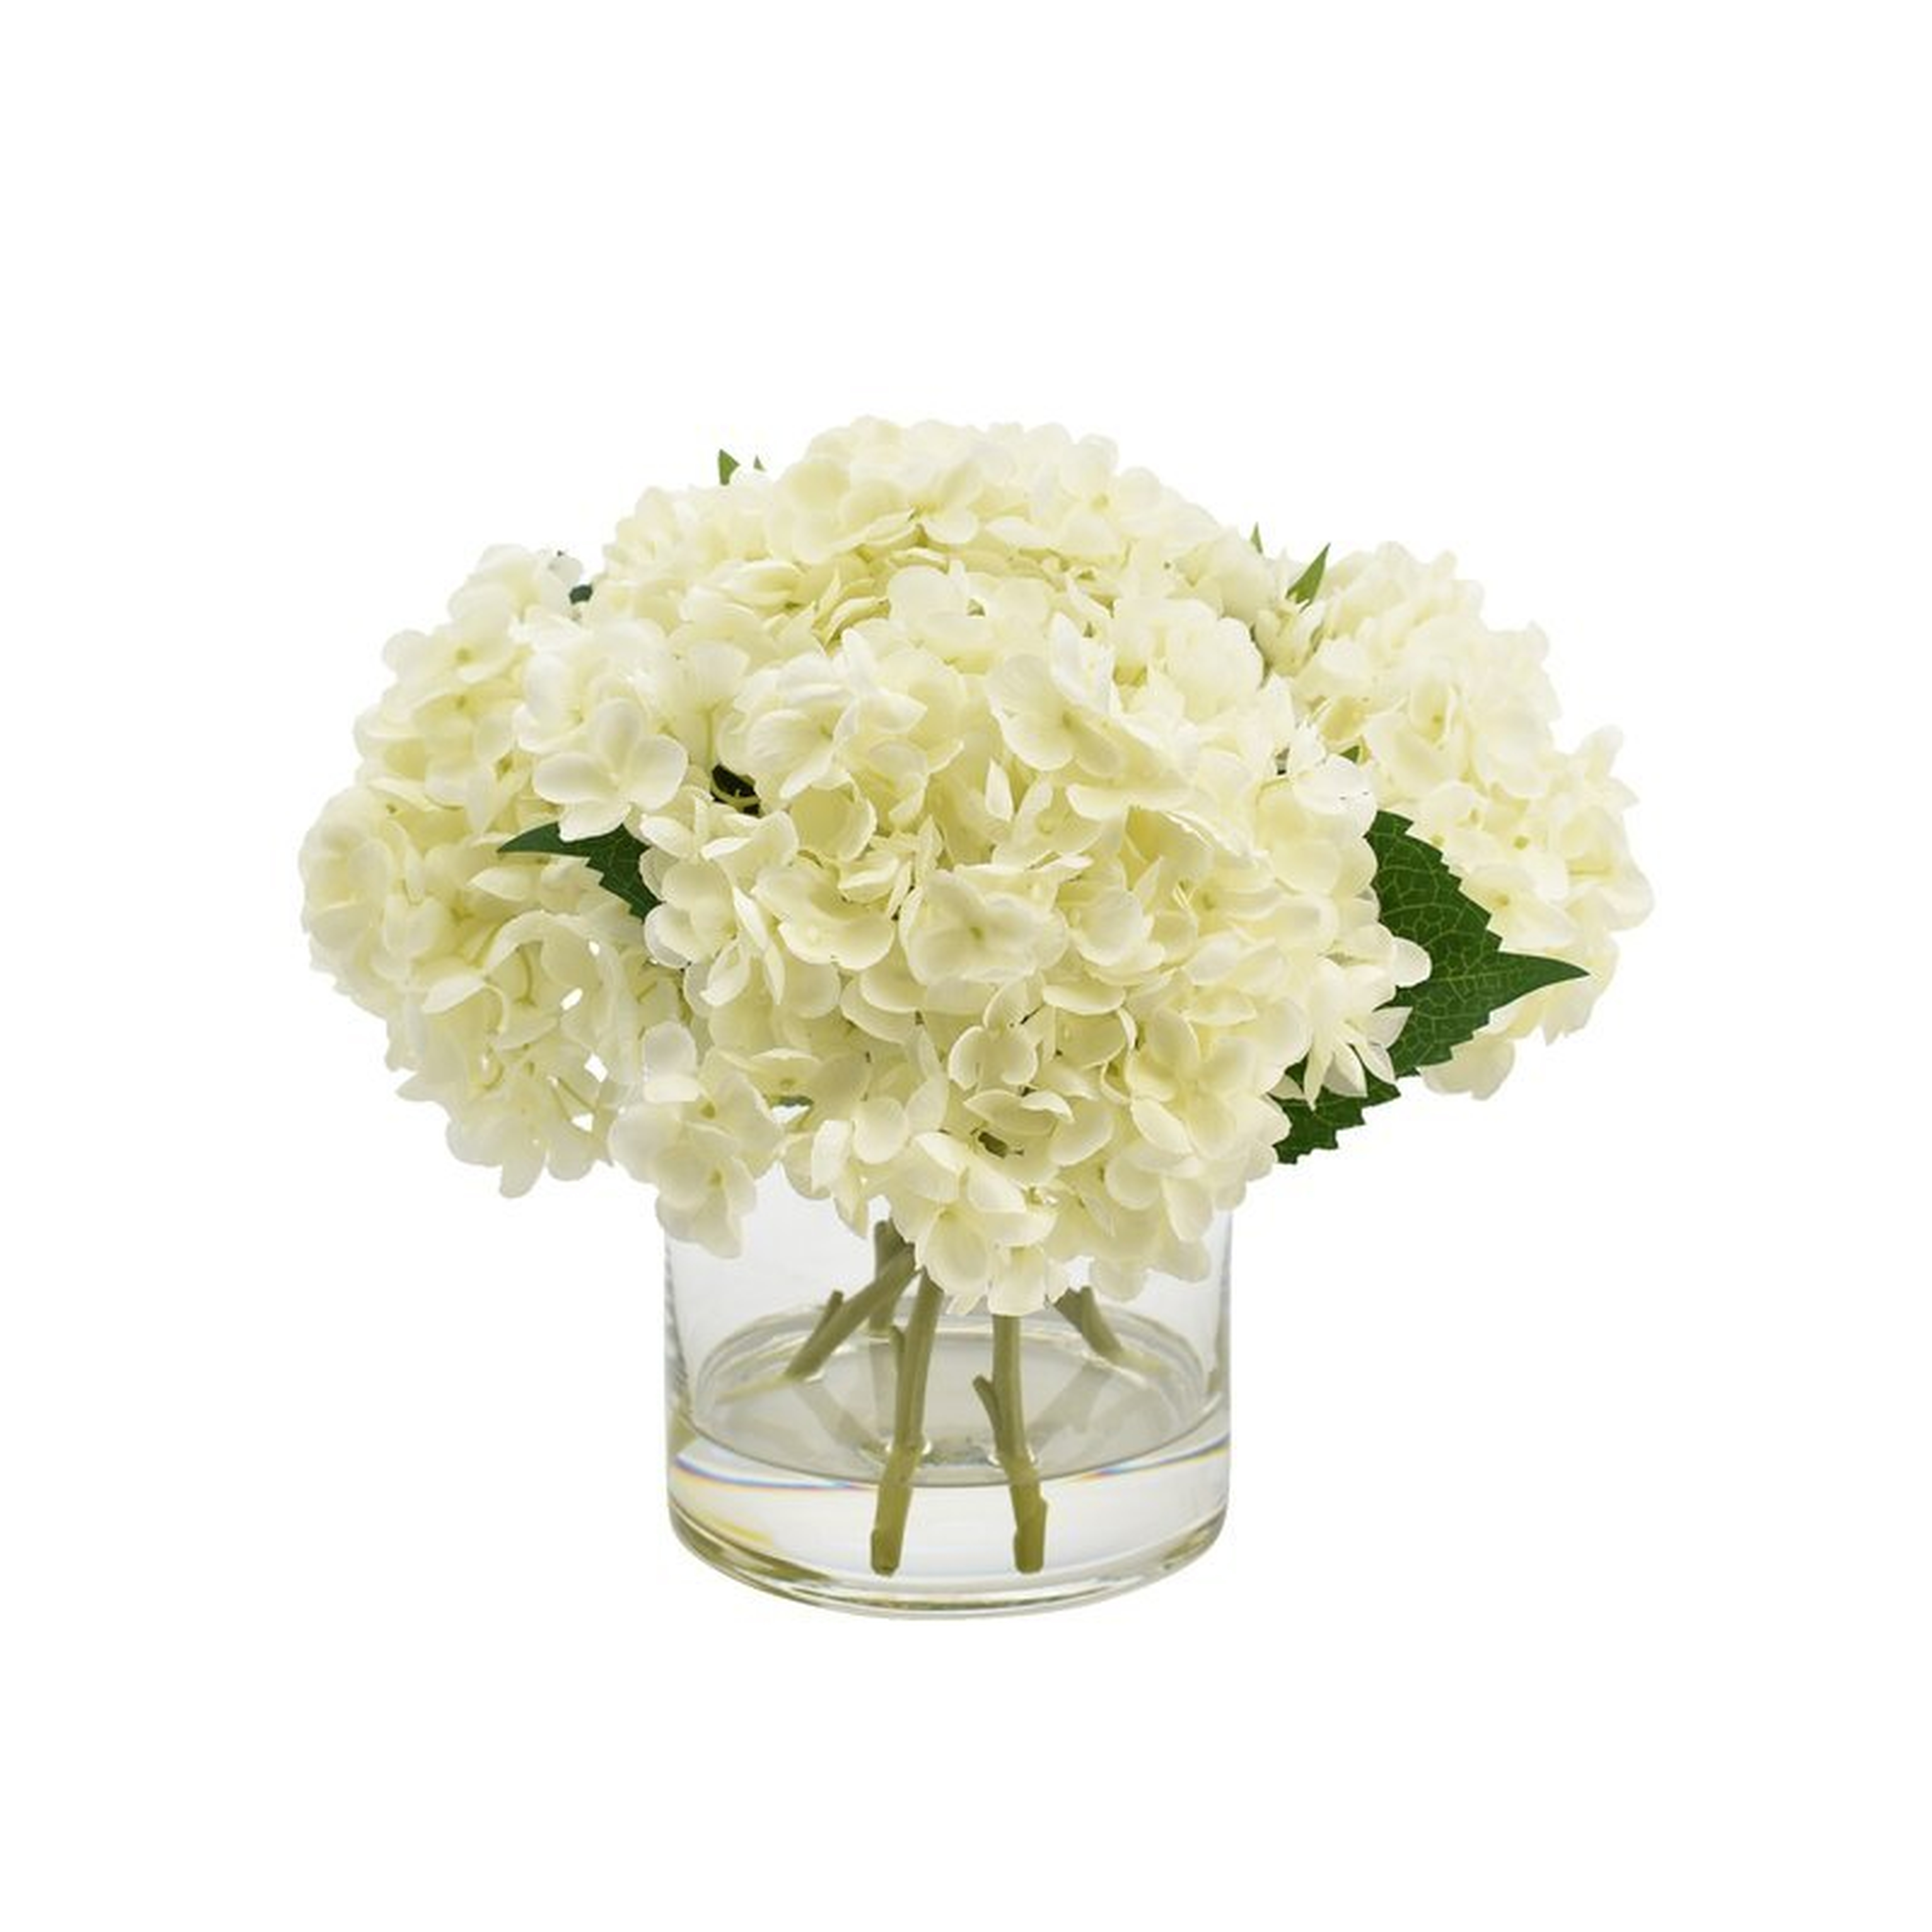 Hydrangea Floral Arrangement in Glass Vase - White - Wayfair